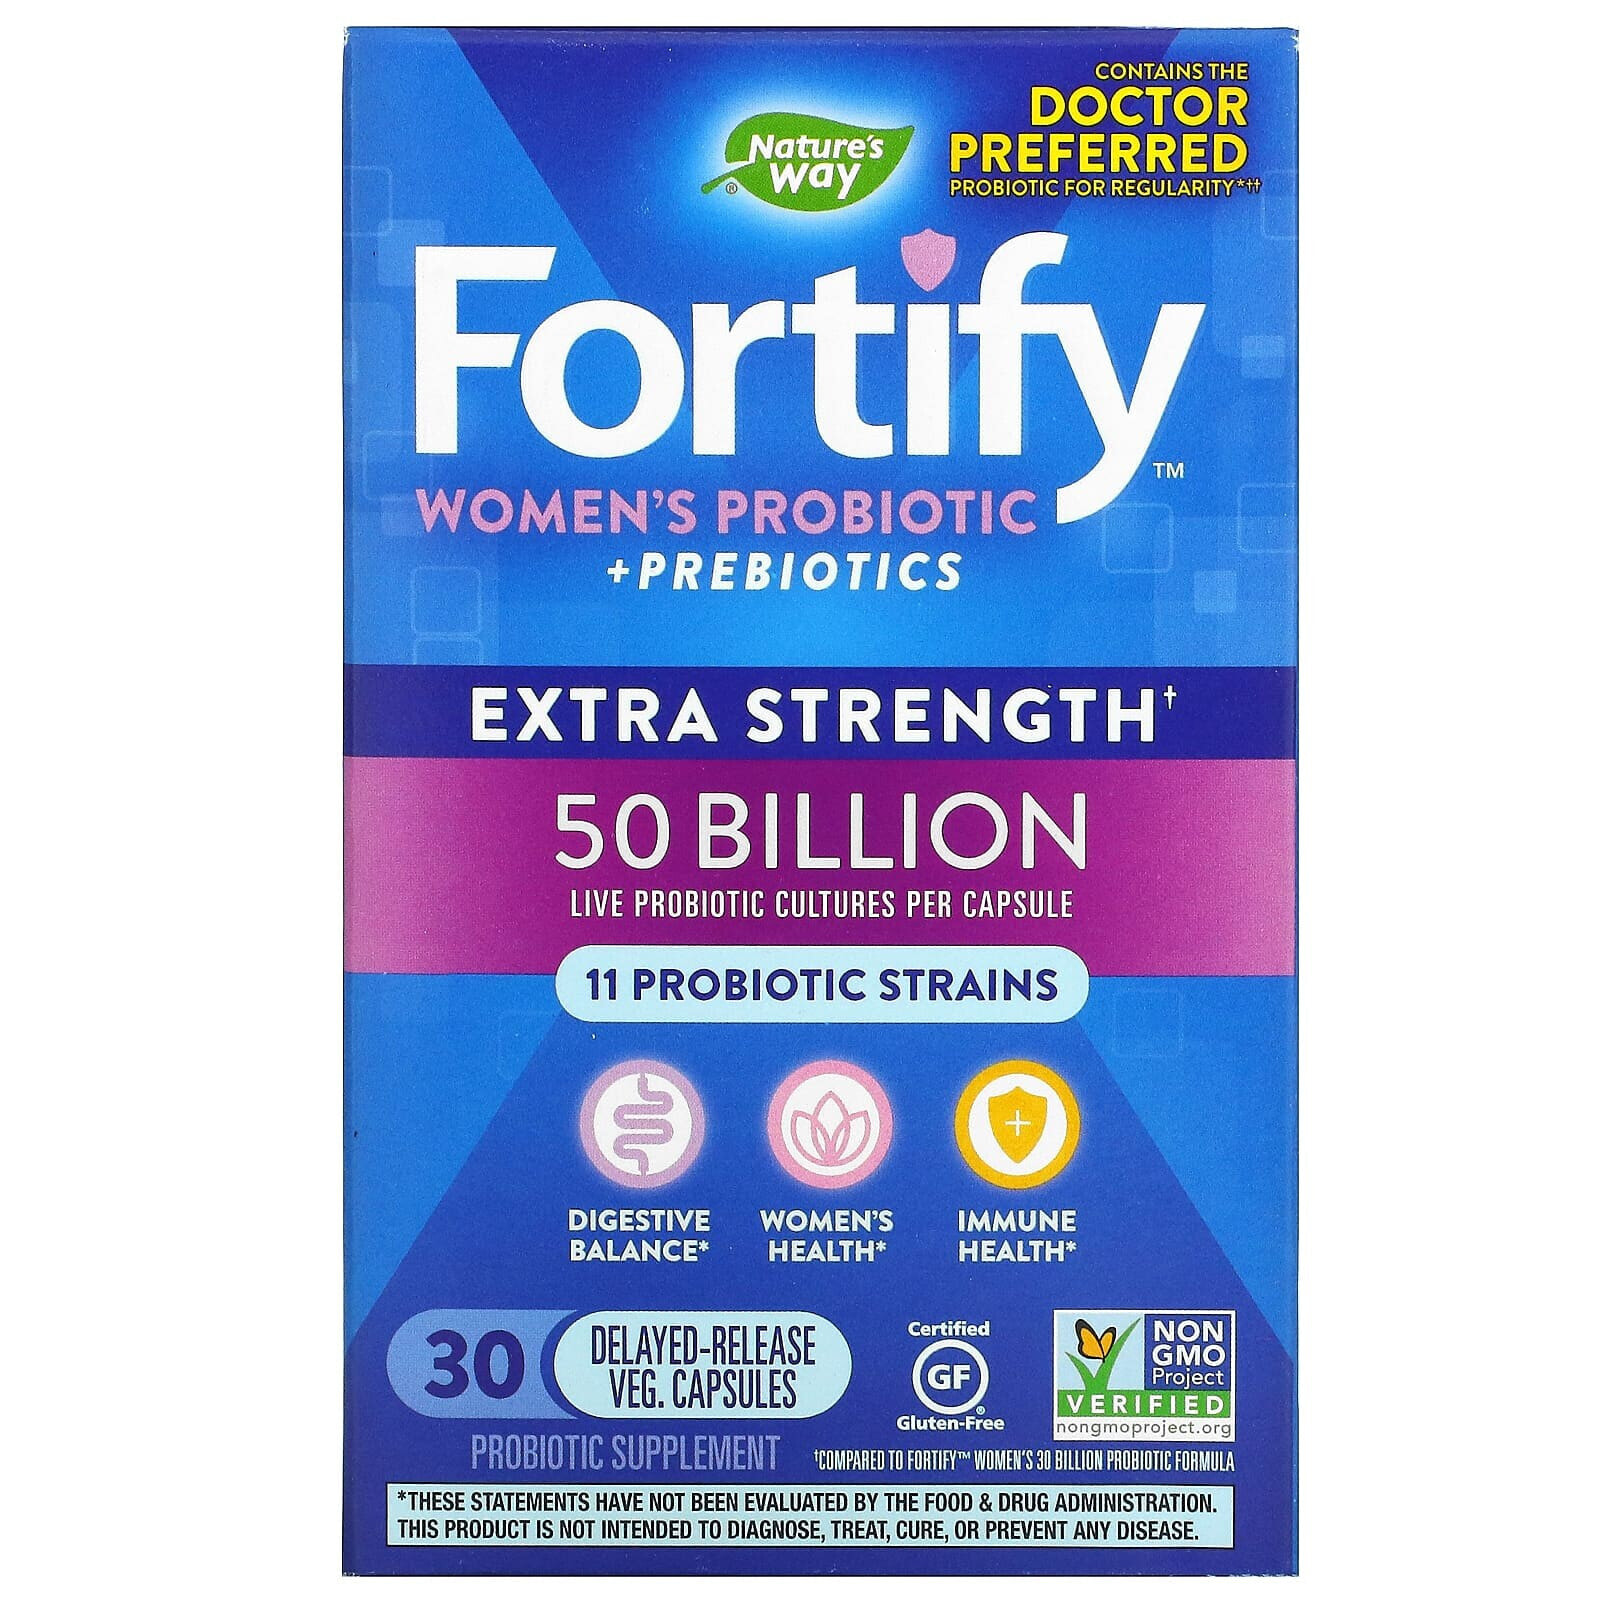 Nature's Way, Fortify комплекс пробиотиков и пребиотиков для женщин, повышенной силы действия, 50 миллиардов, 30 растительных капсул с отсроченным высвобождением